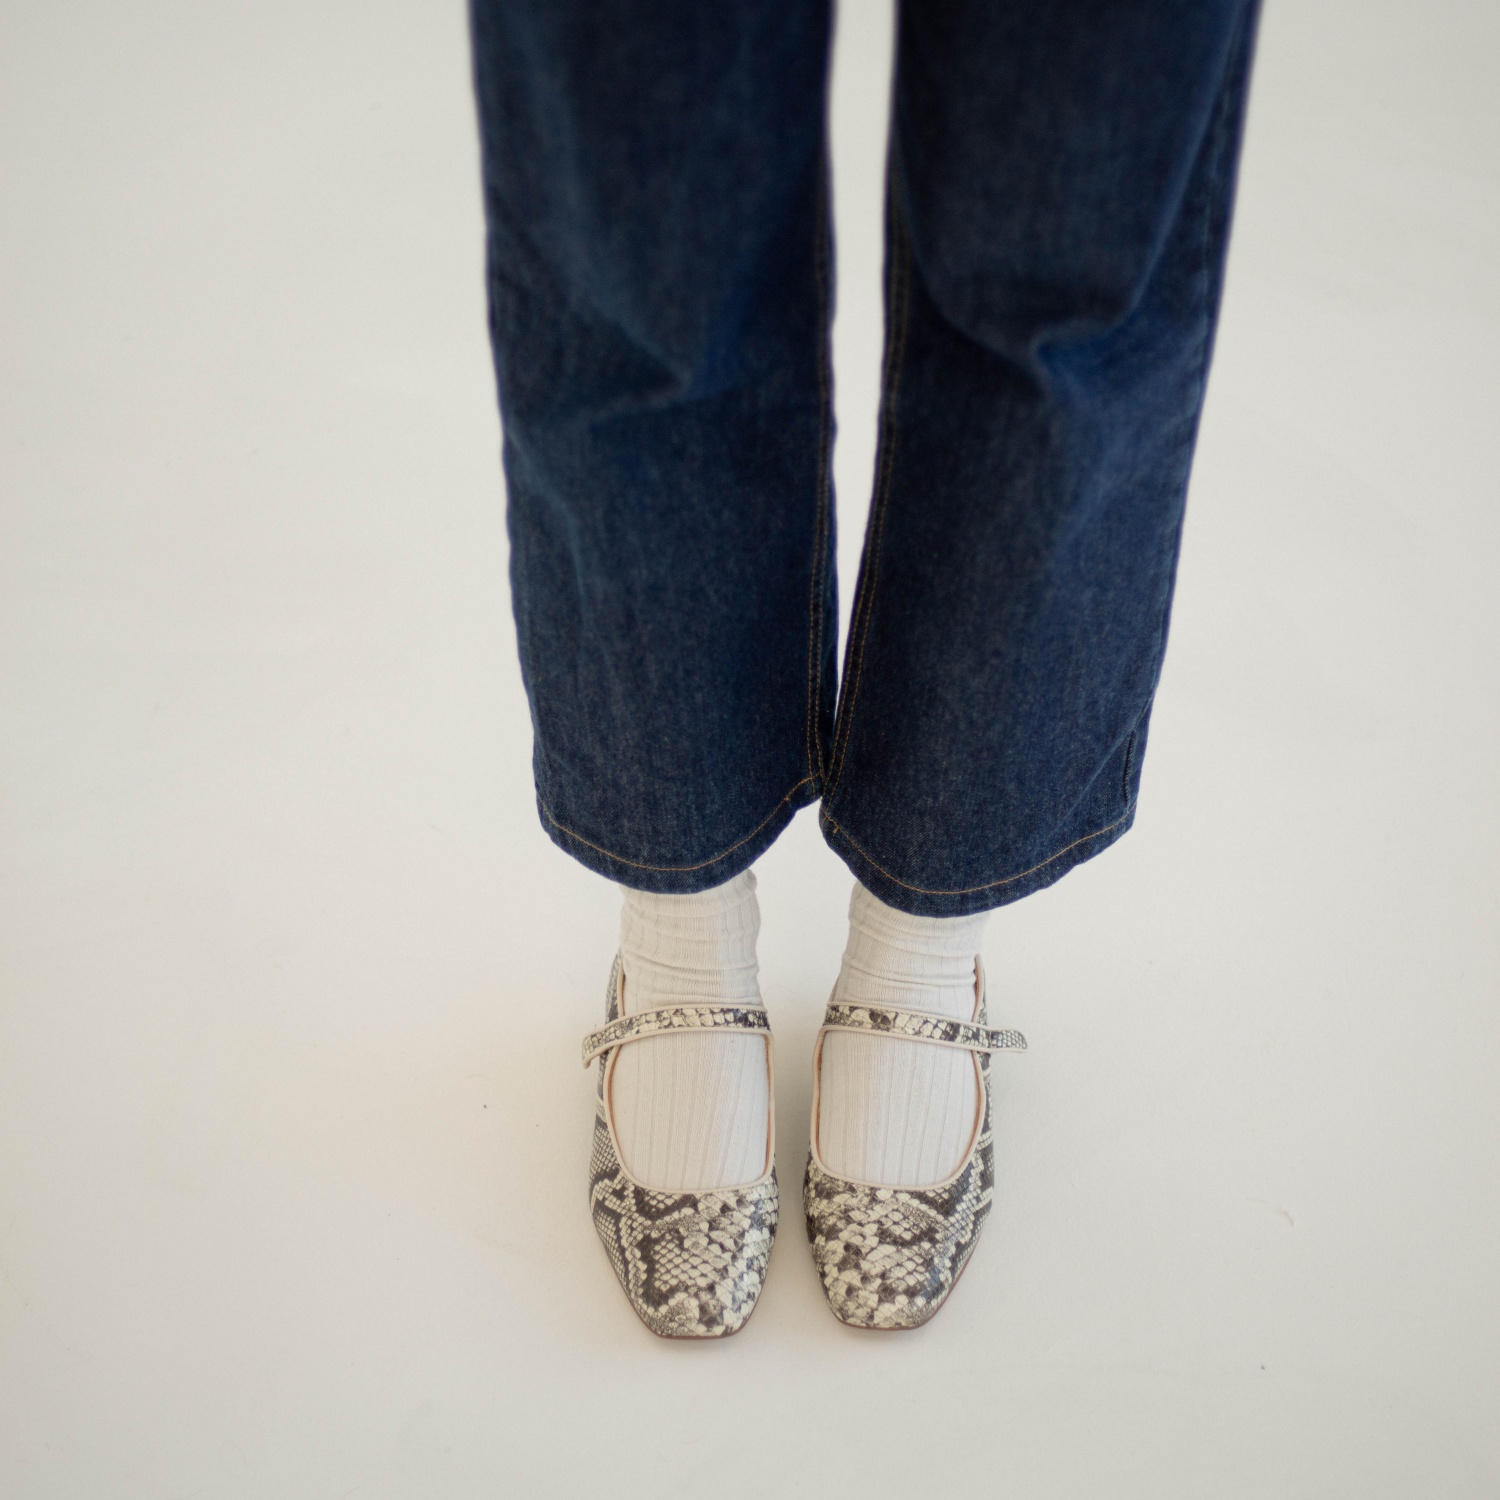  Dora Low Heels, off white python pattern-6 